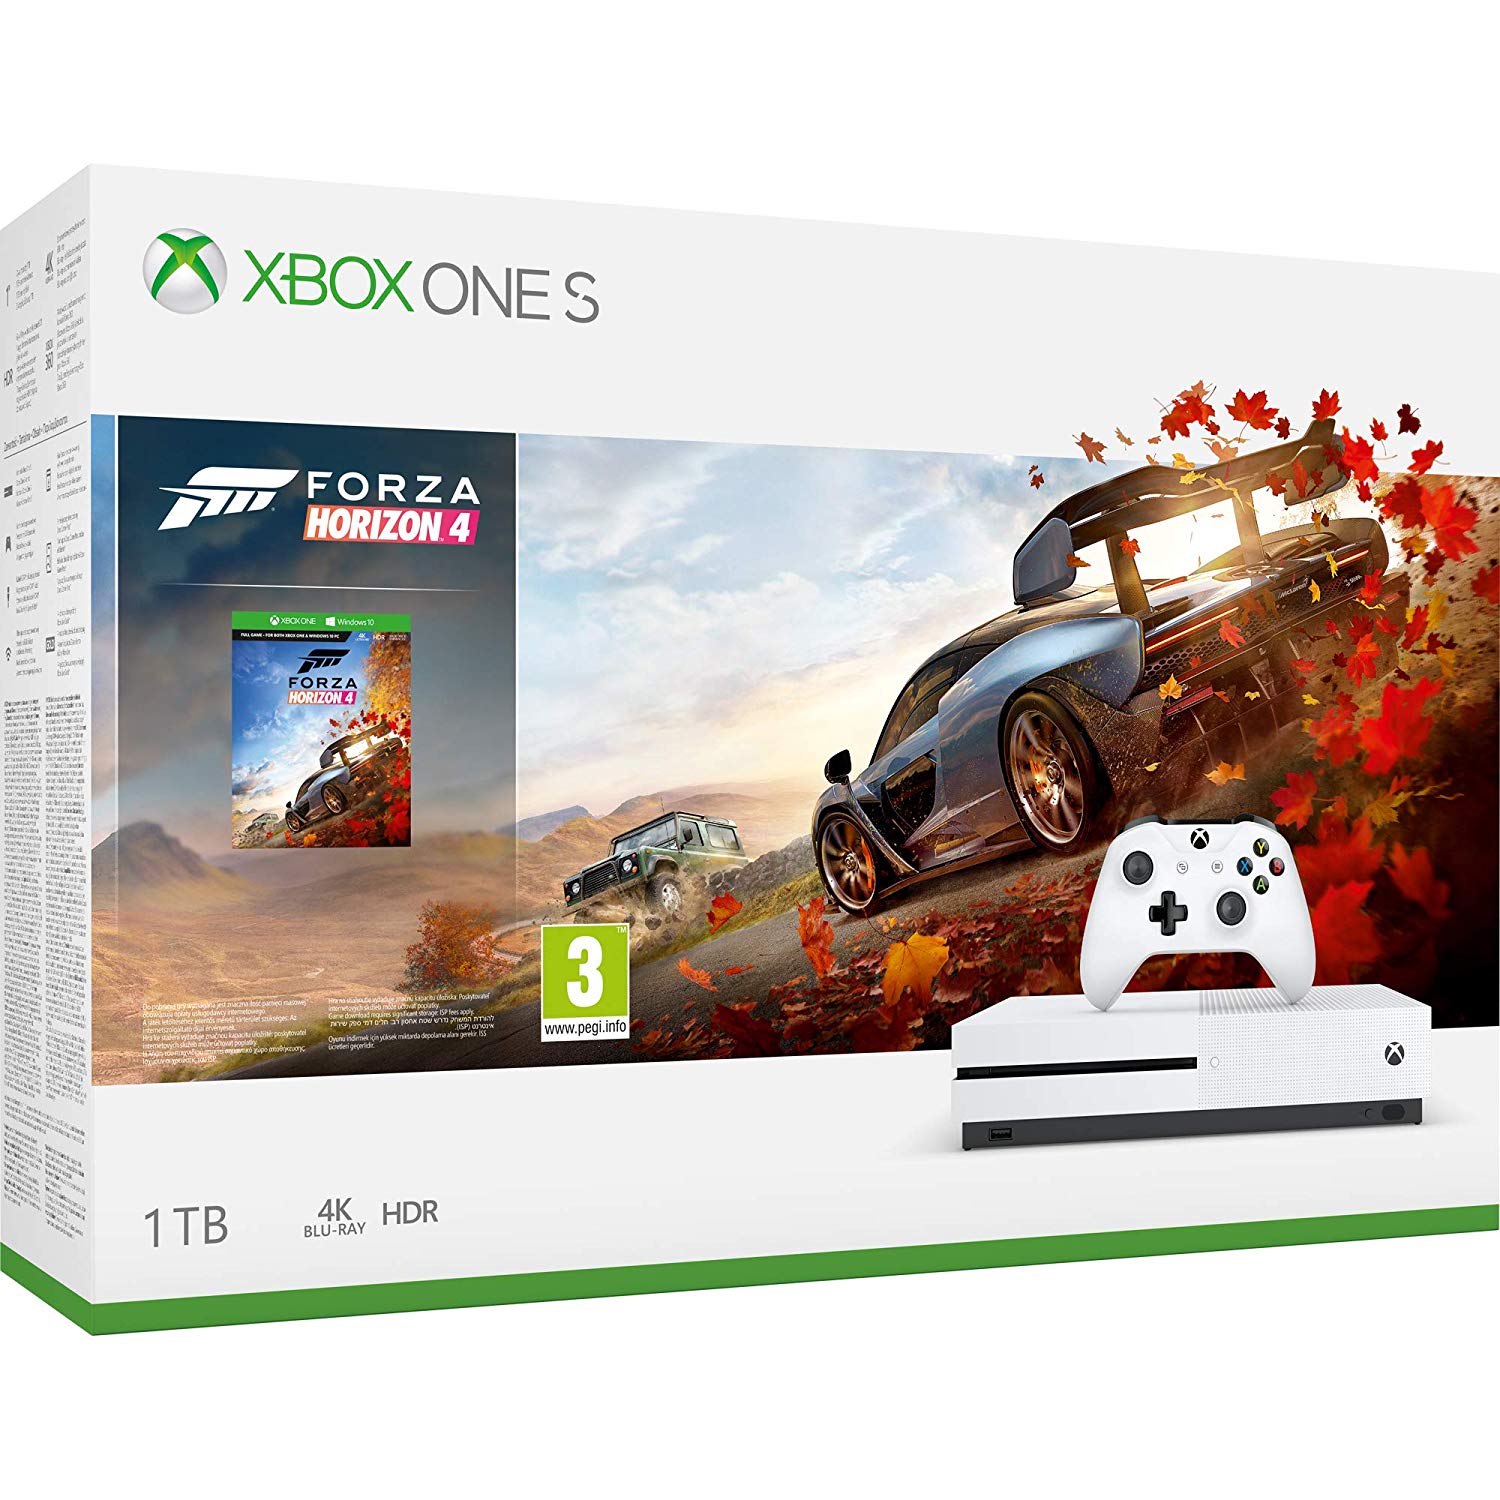 Microsoft Xbox One S 1 TB Forza Horizon 4 Bundle Ajándék 3 hónap Xbox Live Gold és vertikális állvány - Xbox One Gépek